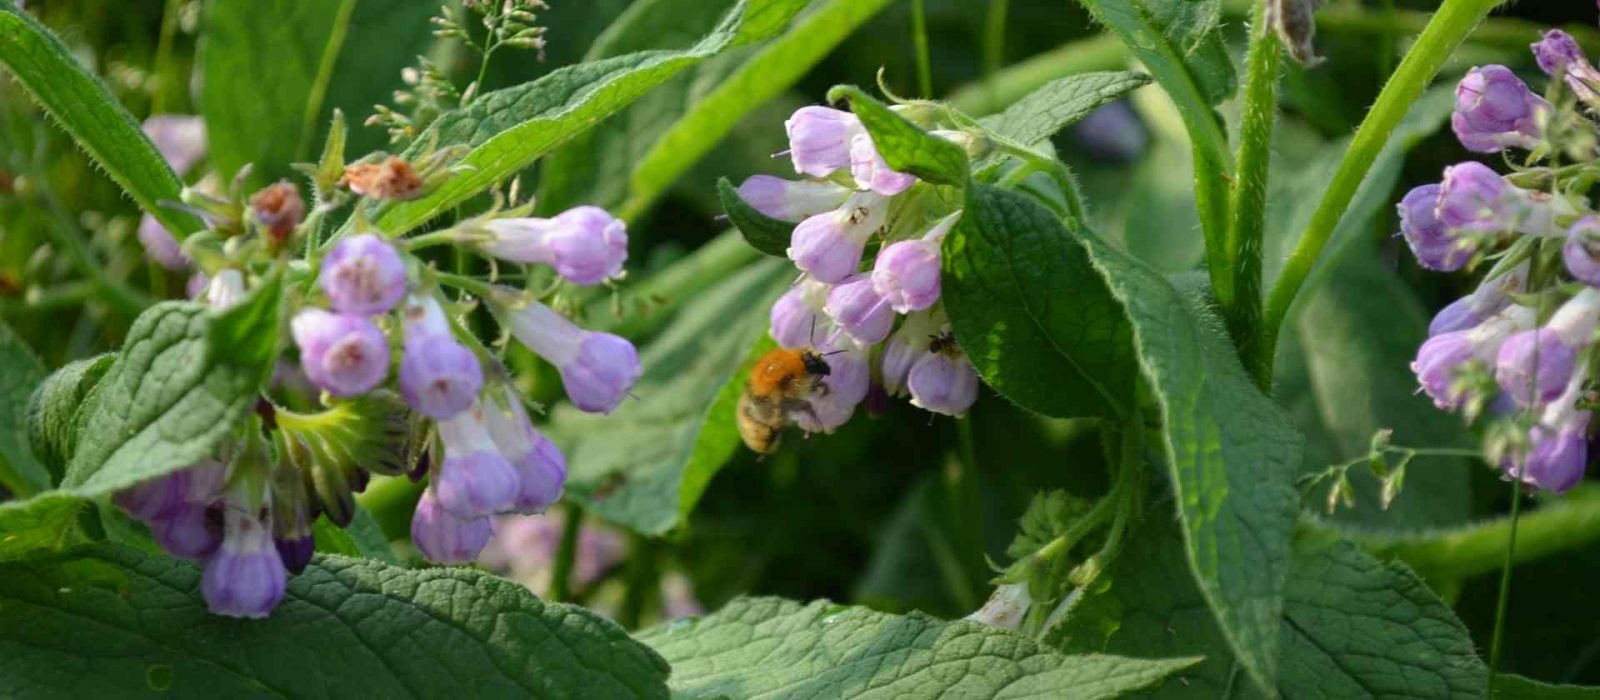 Un ape si ferma sui fiori in un aiuola realizzata tramite i principi dell'agricoltura sinergica